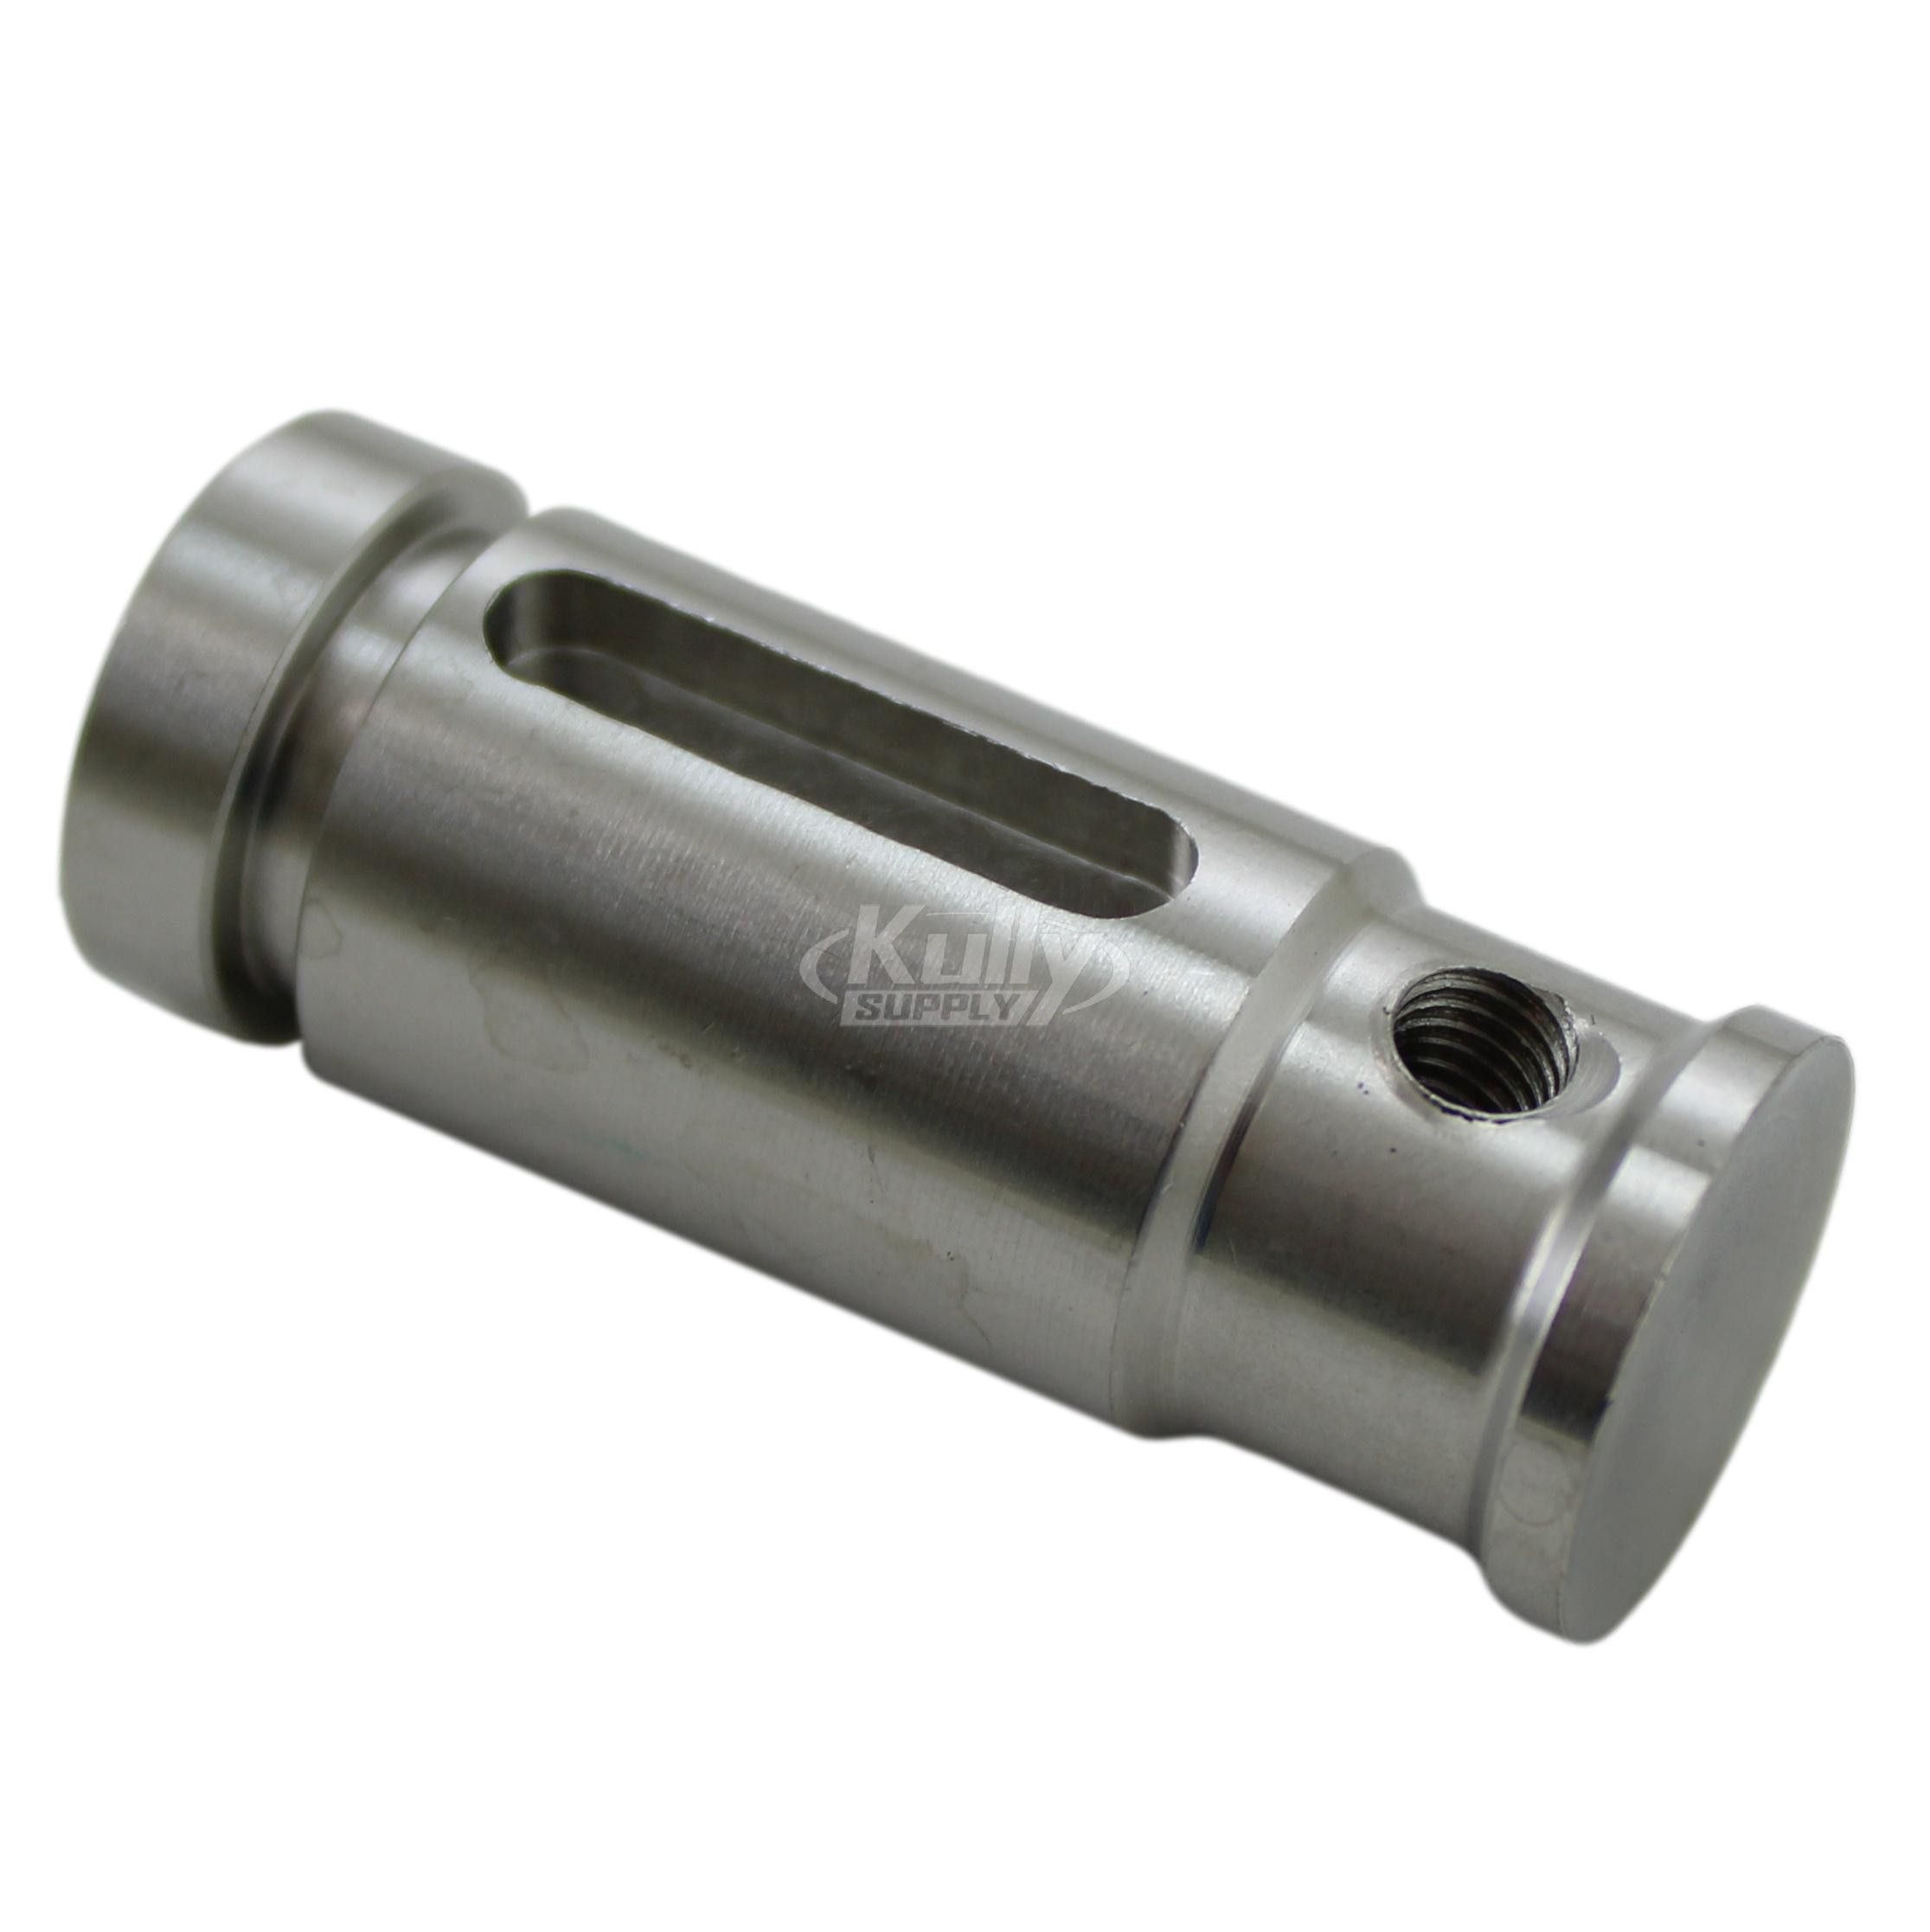 Acorn 1400-005-119 Horizontal Plunger for Soap Dispenser